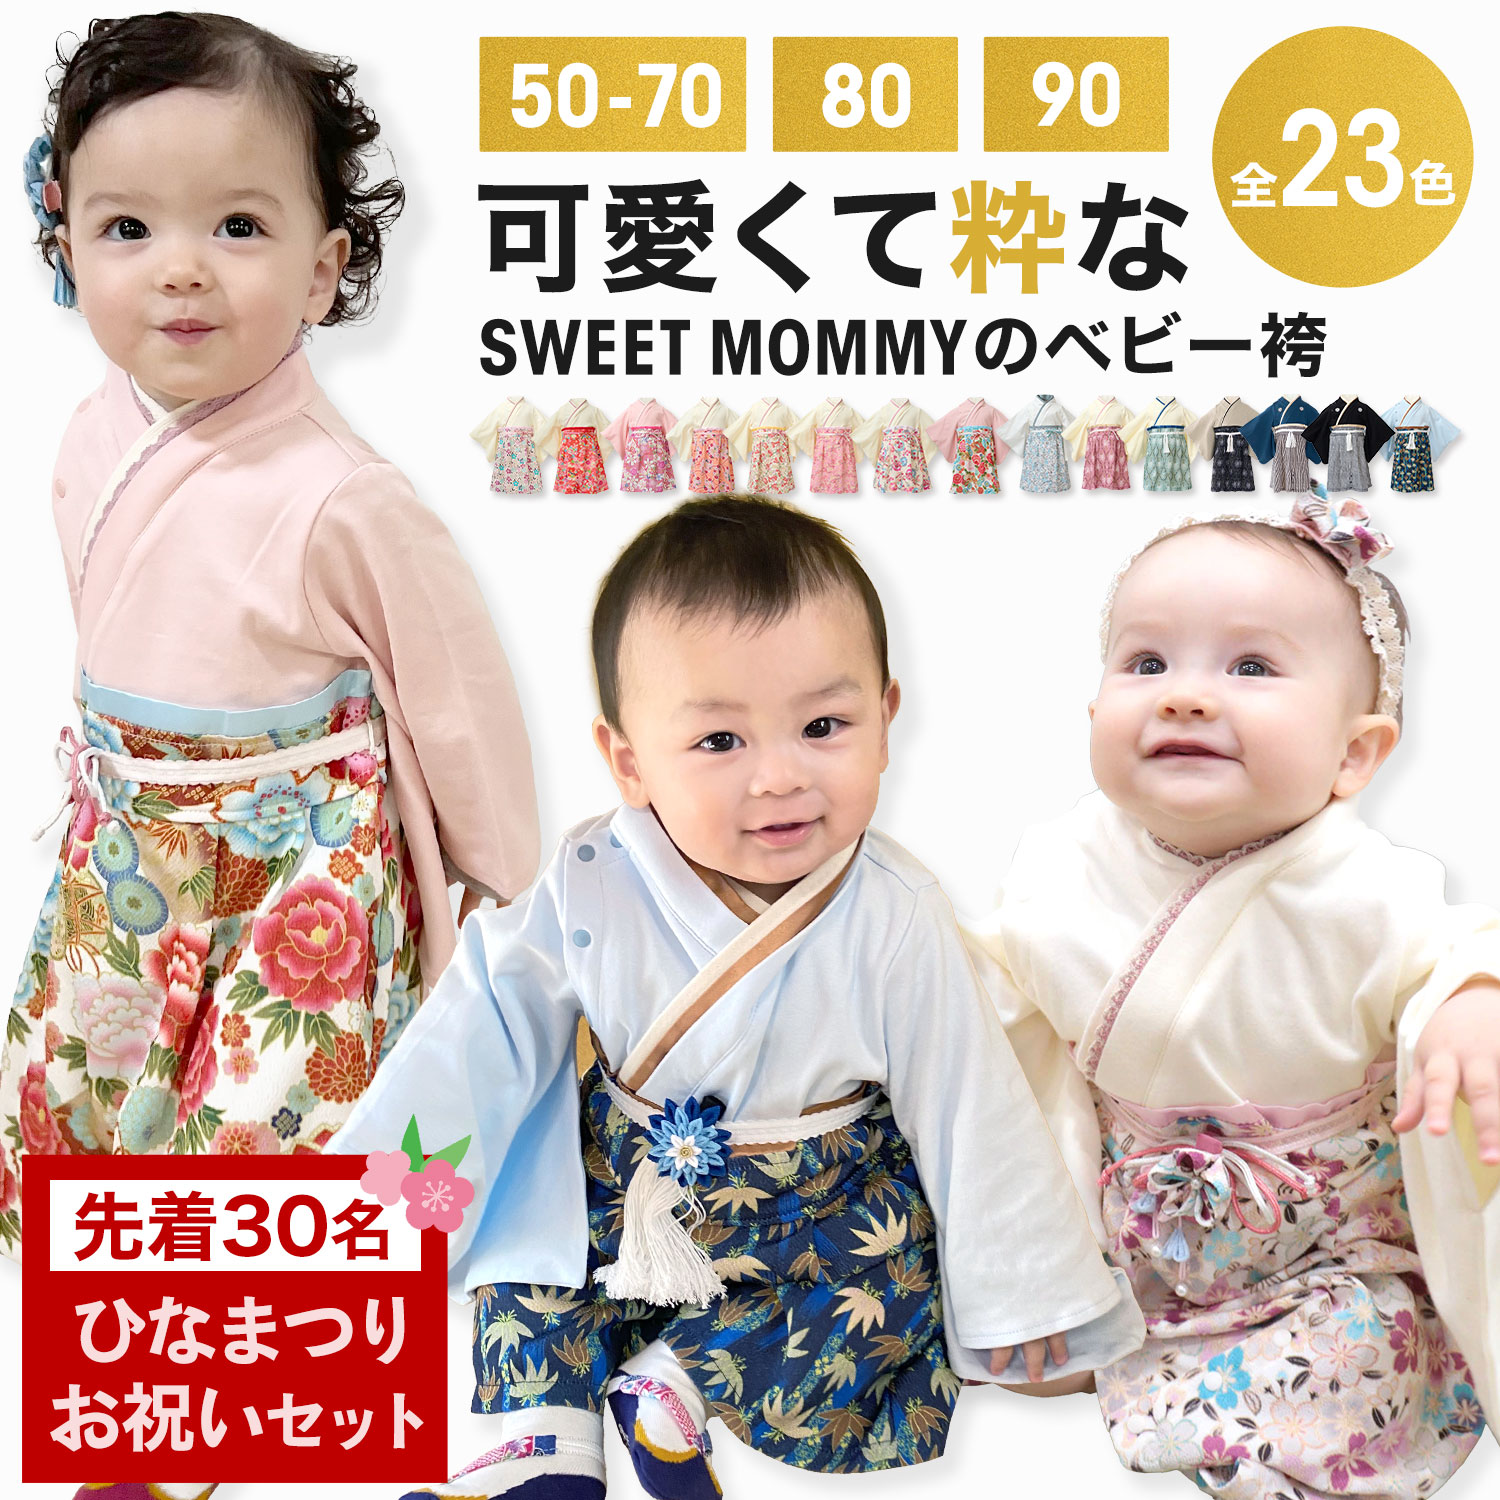 sweetmommyスイートマミー 袴ロンパース 80 桜吹雪 ピンク - 記念品